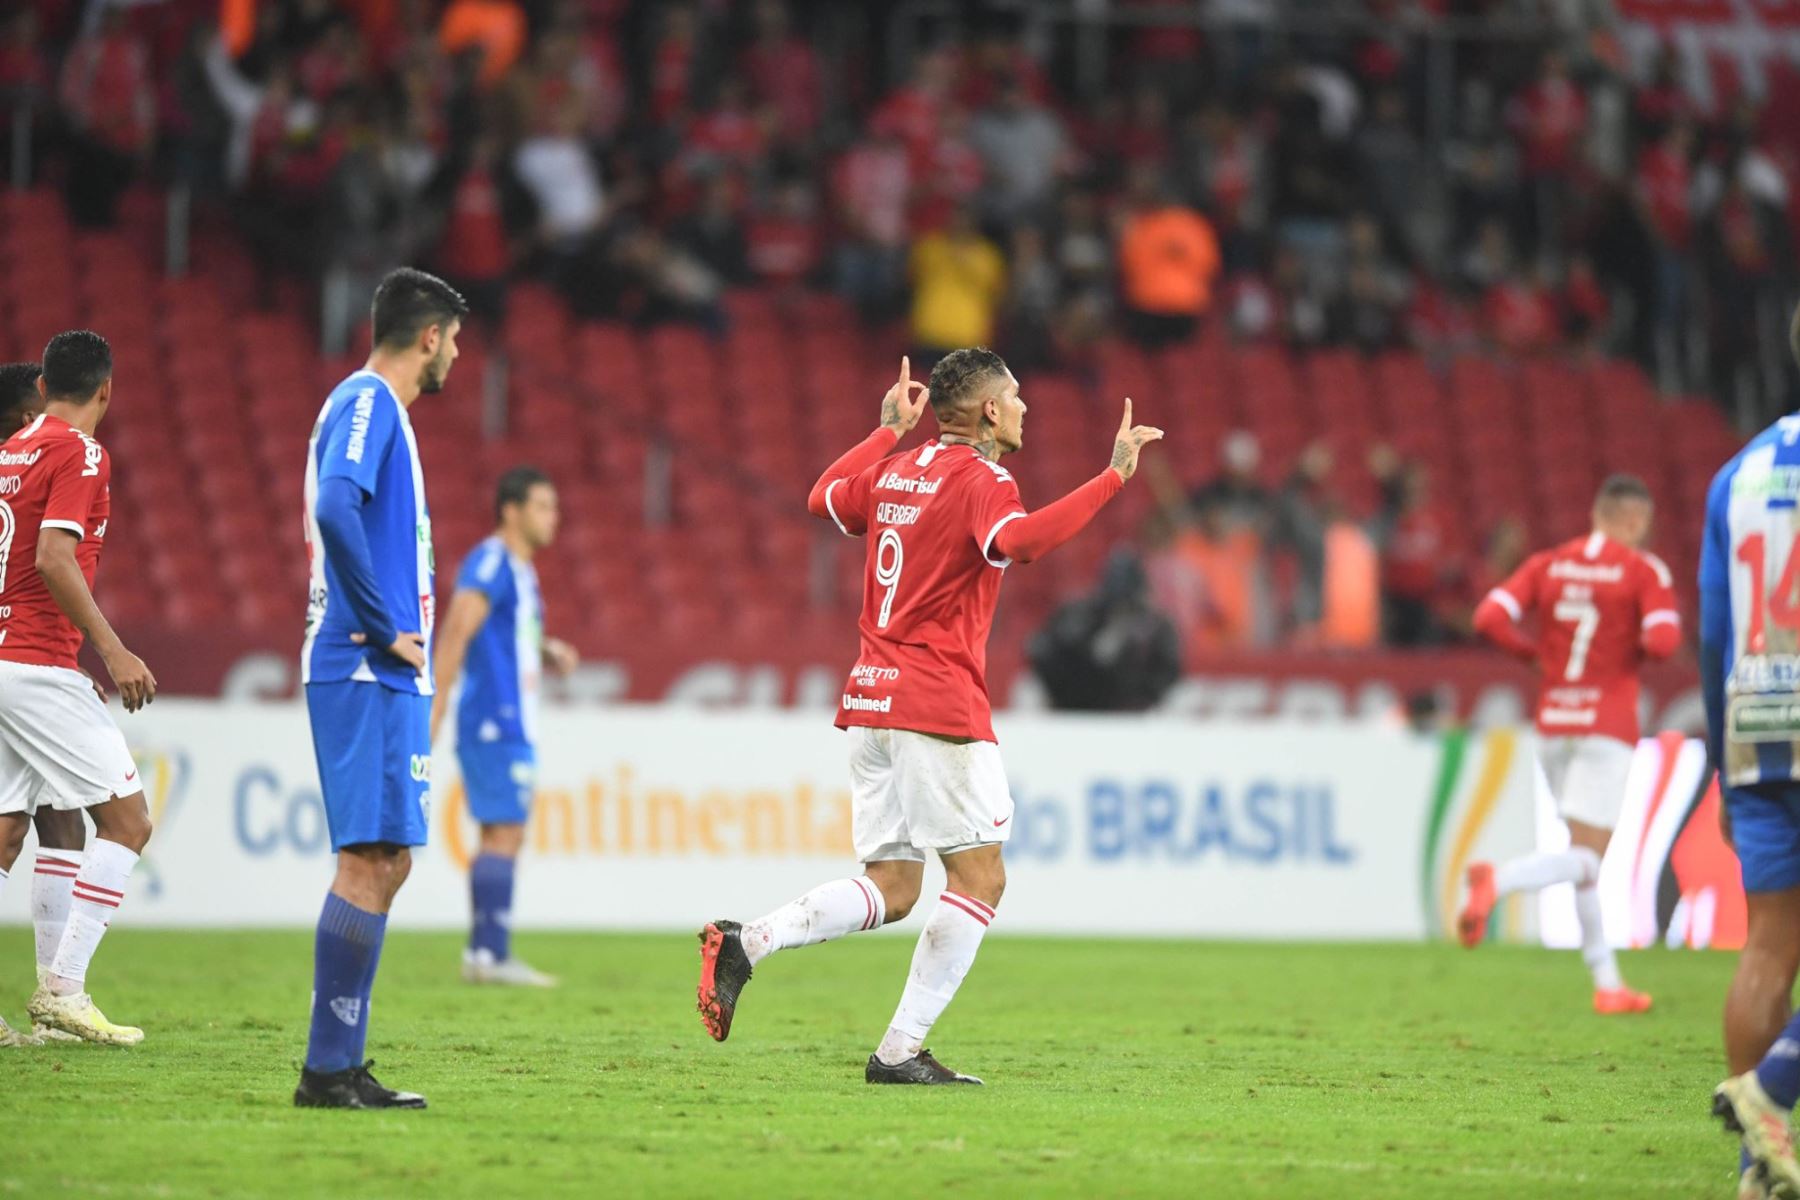 Con dos goles de Paolo Guerrero, el Internacional de Porto Alegre derrotó por 3-1 al Paysandu en el Estadio Beira-Rio por el partido de ida de los octavos de final de la Copa de Brasil. (Fotos: Ricardo Duarte/ Sport Club Internacional)